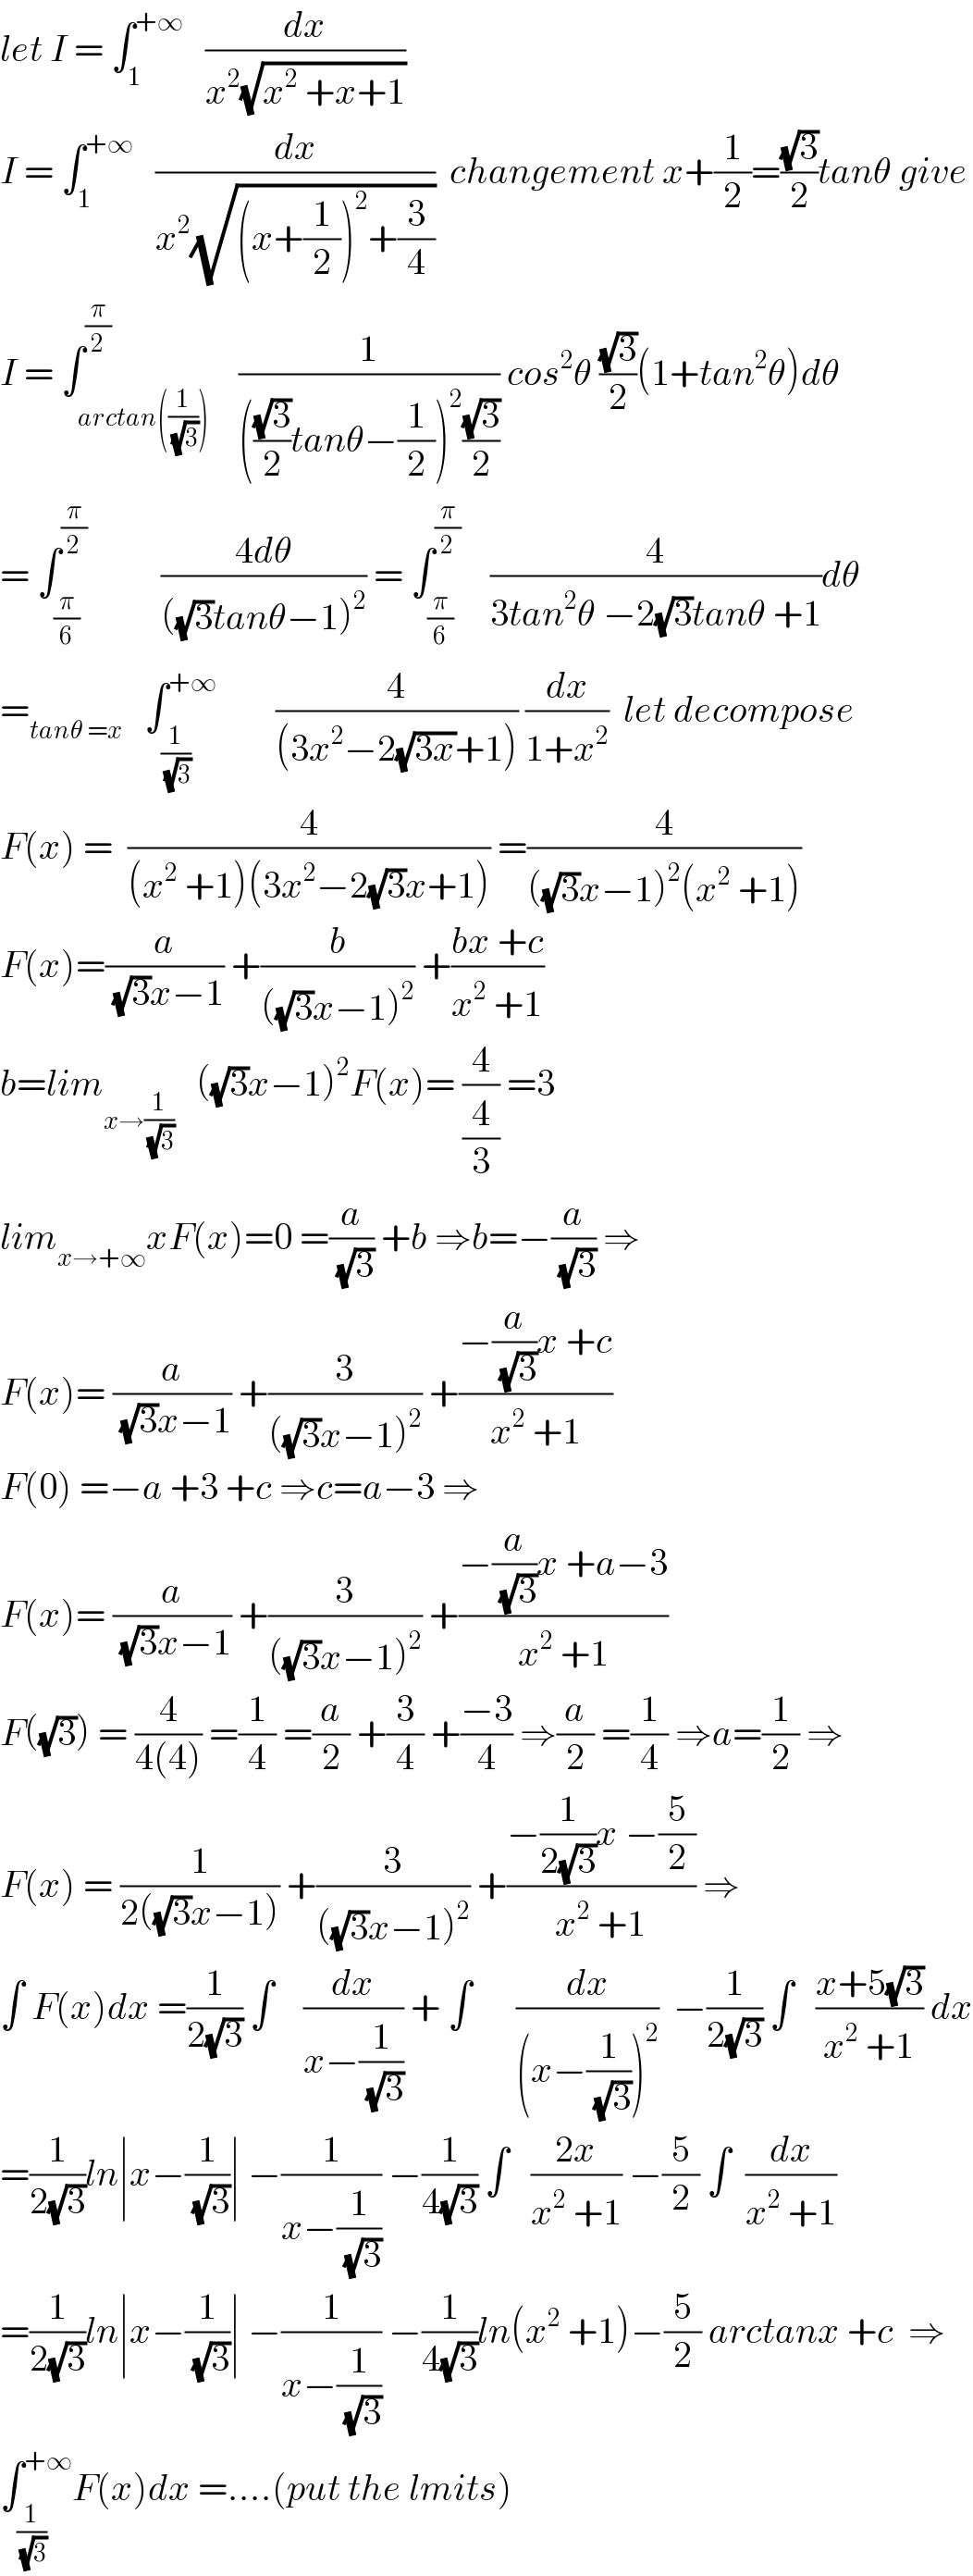 let I = ∫_1 ^(+∞)    (dx/(x^2 (√(x^2  +x+1))))  I = ∫_1 ^(+∞)    (dx/(x^2 (√((x+(1/2))^2 +(3/4)))))  changement x+(1/2)=((√3)/2)tanθ give  I = ∫_(arctan((1/(√3)))) ^(π/2)    (1/((((√3)/2)tanθ−(1/2))^2 ((√3)/2))) cos^2 θ ((√3)/2)(1+tan^2 θ)dθ  = ∫_(π/6) ^(π/2)           ((4dθ)/(((√3)tanθ−1)^2 )) = ∫_(π/6) ^(π/2)     (4/(3tan^2 θ −2(√3)tanθ +1))dθ  =_(tanθ =x)    ∫_(1/(√3)) ^(+∞)         (4/((3x^2 −2(√(3x))+1))) (dx/(1+x^2 ))  let decompose   F(x) =  (4/((x^2  +1)(3x^2 −2(√3)x+1))) =(4/(((√3)x−1)^2 (x^2  +1)))  F(x)=(a/((√3)x−1)) +(b/(((√3)x−1)^2 )) +((bx +c)/(x^2  +1))  b=lim_(x→(1/(√3)))    ((√3)x−1)^2 F(x)= (4/(4/3)) =3  lim_(x→+∞) xF(x)=0 =(a/(√3)) +b ⇒b=−(a/(√3)) ⇒  F(x)= (a/((√3)x−1)) +(3/(((√3)x−1)^2 )) +((−(a/(√3))x +c)/(x^2  +1))  F(0) =−a +3 +c ⇒c=a−3 ⇒  F(x)= (a/((√3)x−1)) +(3/(((√3)x−1)^2 )) +((−(a/(√3))x +a−3)/(x^2  +1))  F((√3)) = (4/(4(4))) =(1/4) =(a/2) +(3/4) +((−3)/4) ⇒(a/2) =(1/4) ⇒a=(1/2) ⇒  F(x) = (1/(2((√3)x−1))) +(3/(((√3)x−1)^2 )) +((−(1/(2(√3)))x −(5/2))/(x^2  +1)) ⇒  ∫ F(x)dx =(1/(2(√3))) ∫    (dx/(x−(1/(√3)))) + ∫      (dx/((x−(1/(√3)))^2 ))  −(1/(2(√3))) ∫   ((x+5(√3))/(x^2  +1)) dx  =(1/(2(√3)))ln∣x−(1/(√3))∣ −(1/(x−(1/(√3)))) −(1/(4(√3))) ∫   ((2x)/(x^2  +1)) −(5/2) ∫  (dx/(x^2  +1))  =(1/(2(√3)))ln∣x−(1/(√3))∣ −(1/(x−(1/(√3)))) −(1/(4(√3)))ln(x^2  +1)−(5/2) arctanx +c  ⇒  ∫_(1/(√3)) ^(+∞) F(x)dx =....(put the lmits)  